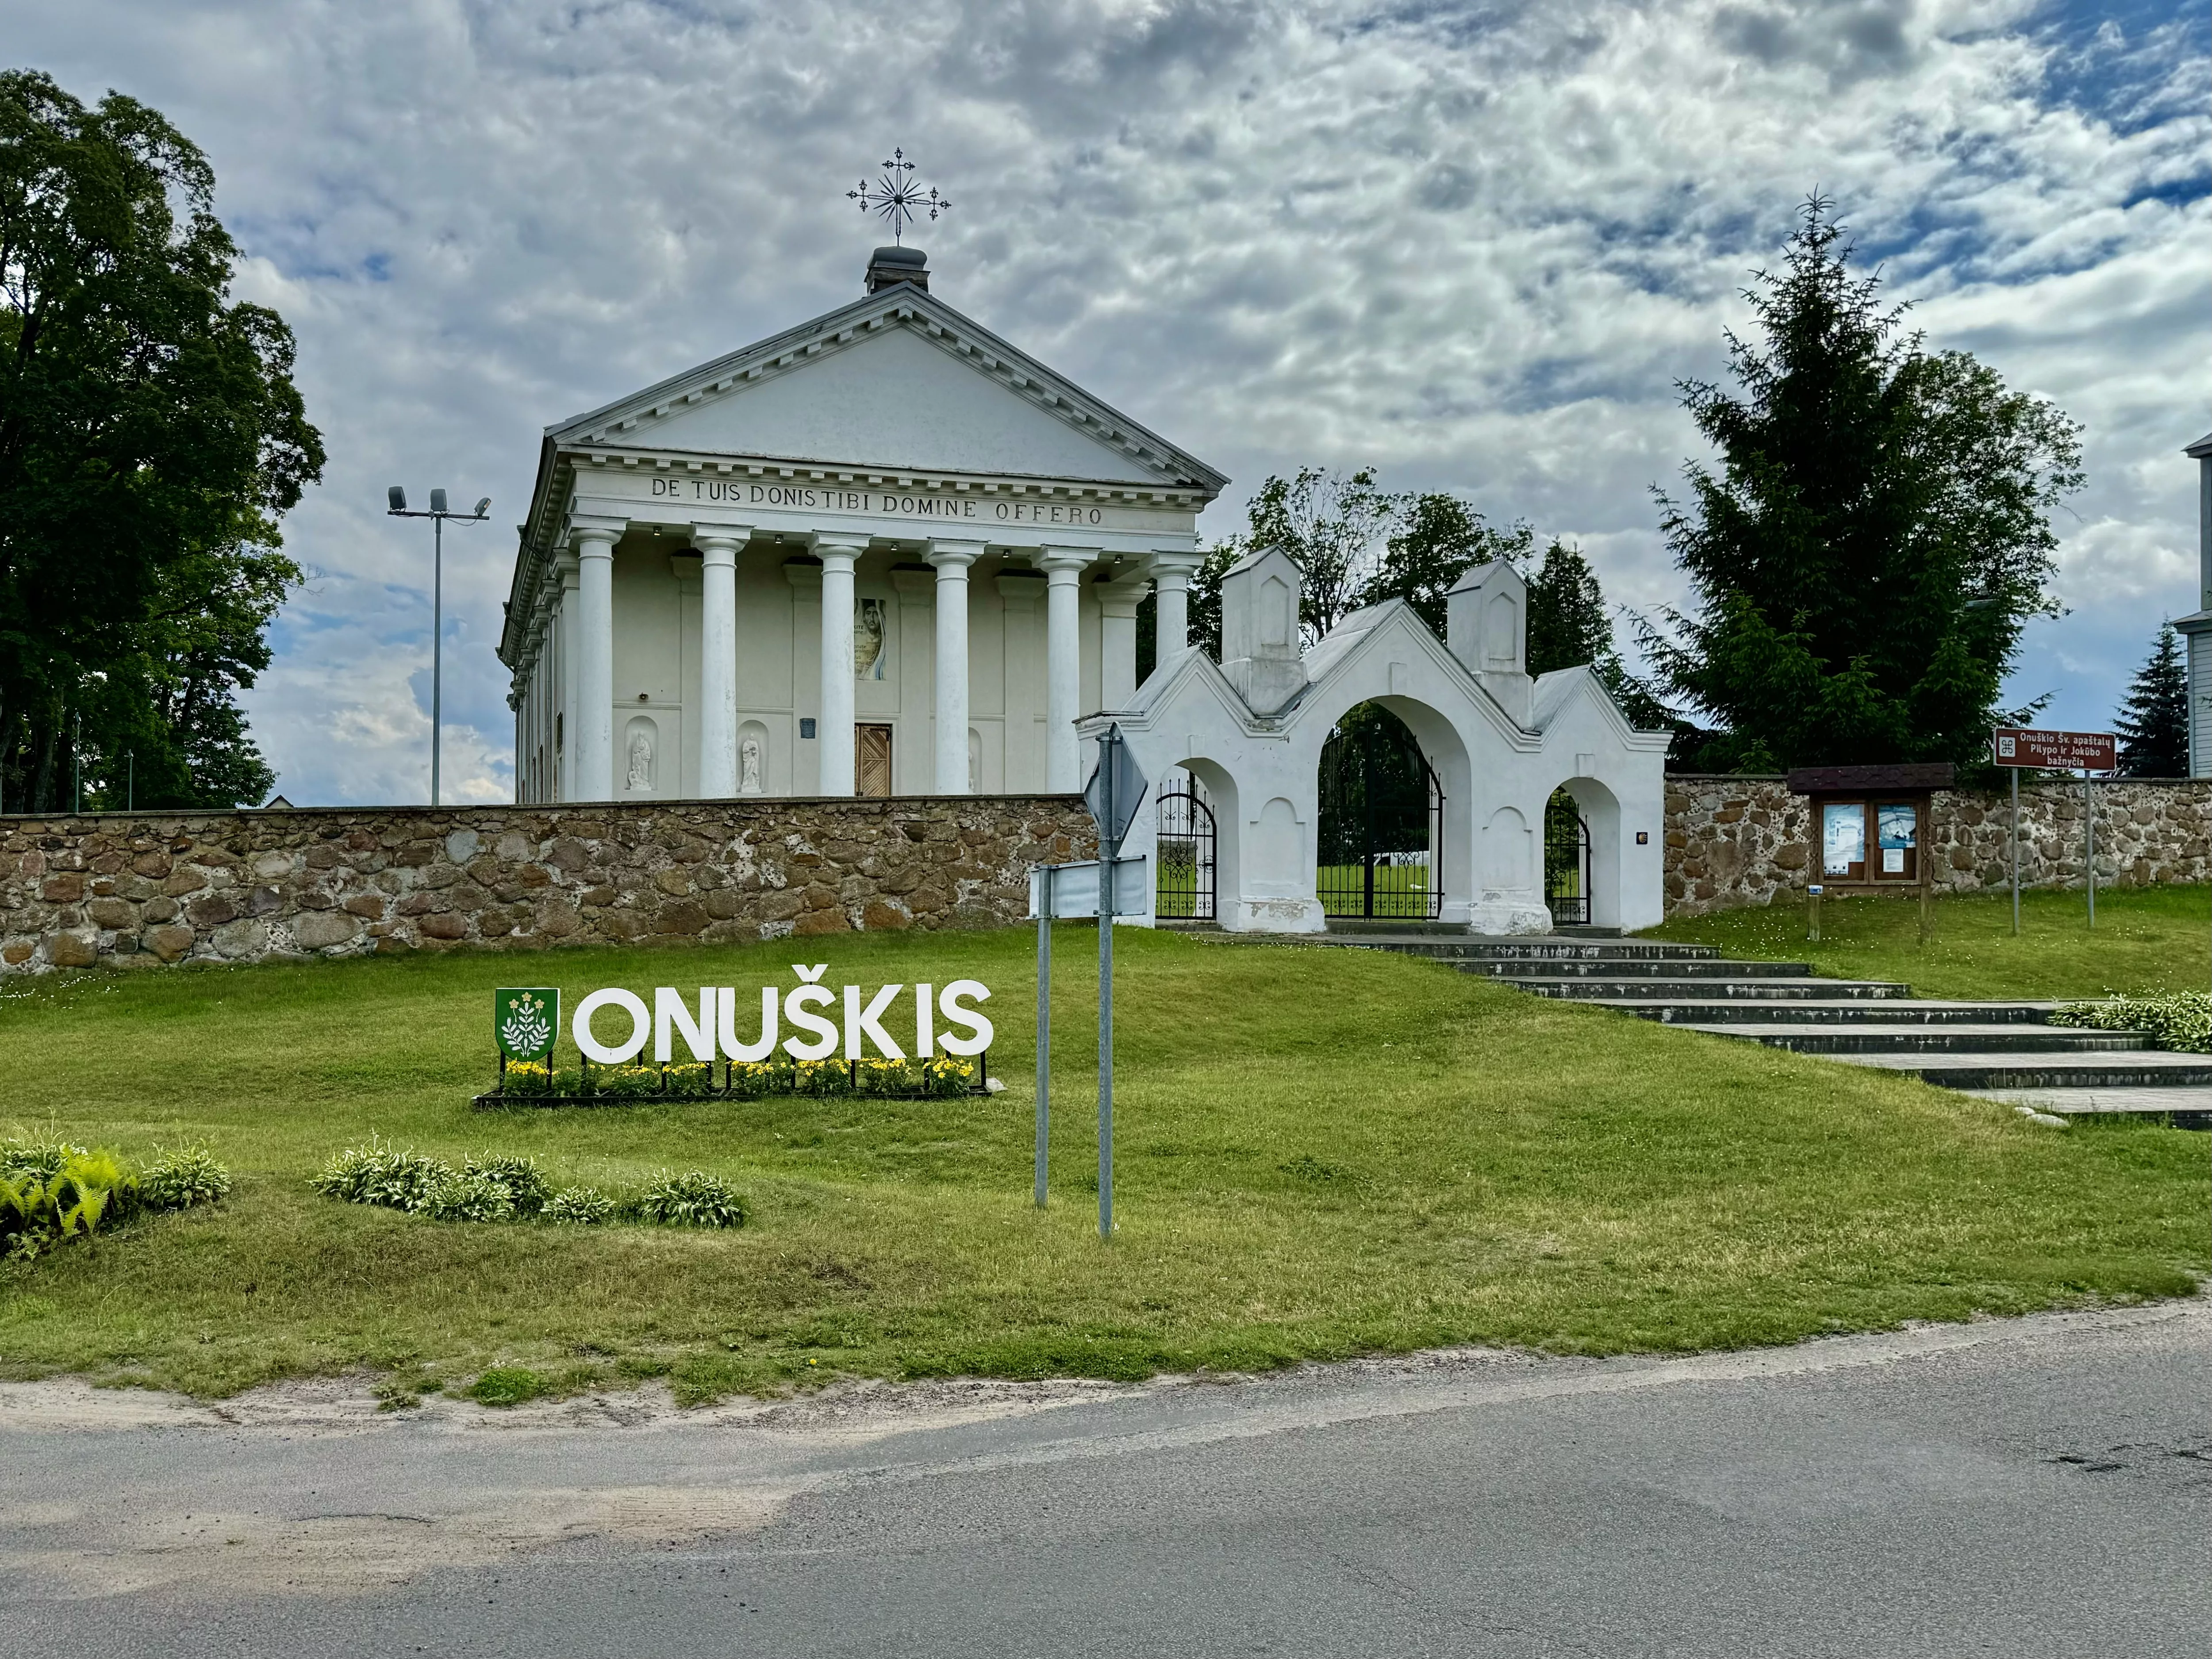 Onuskis, Lithuania